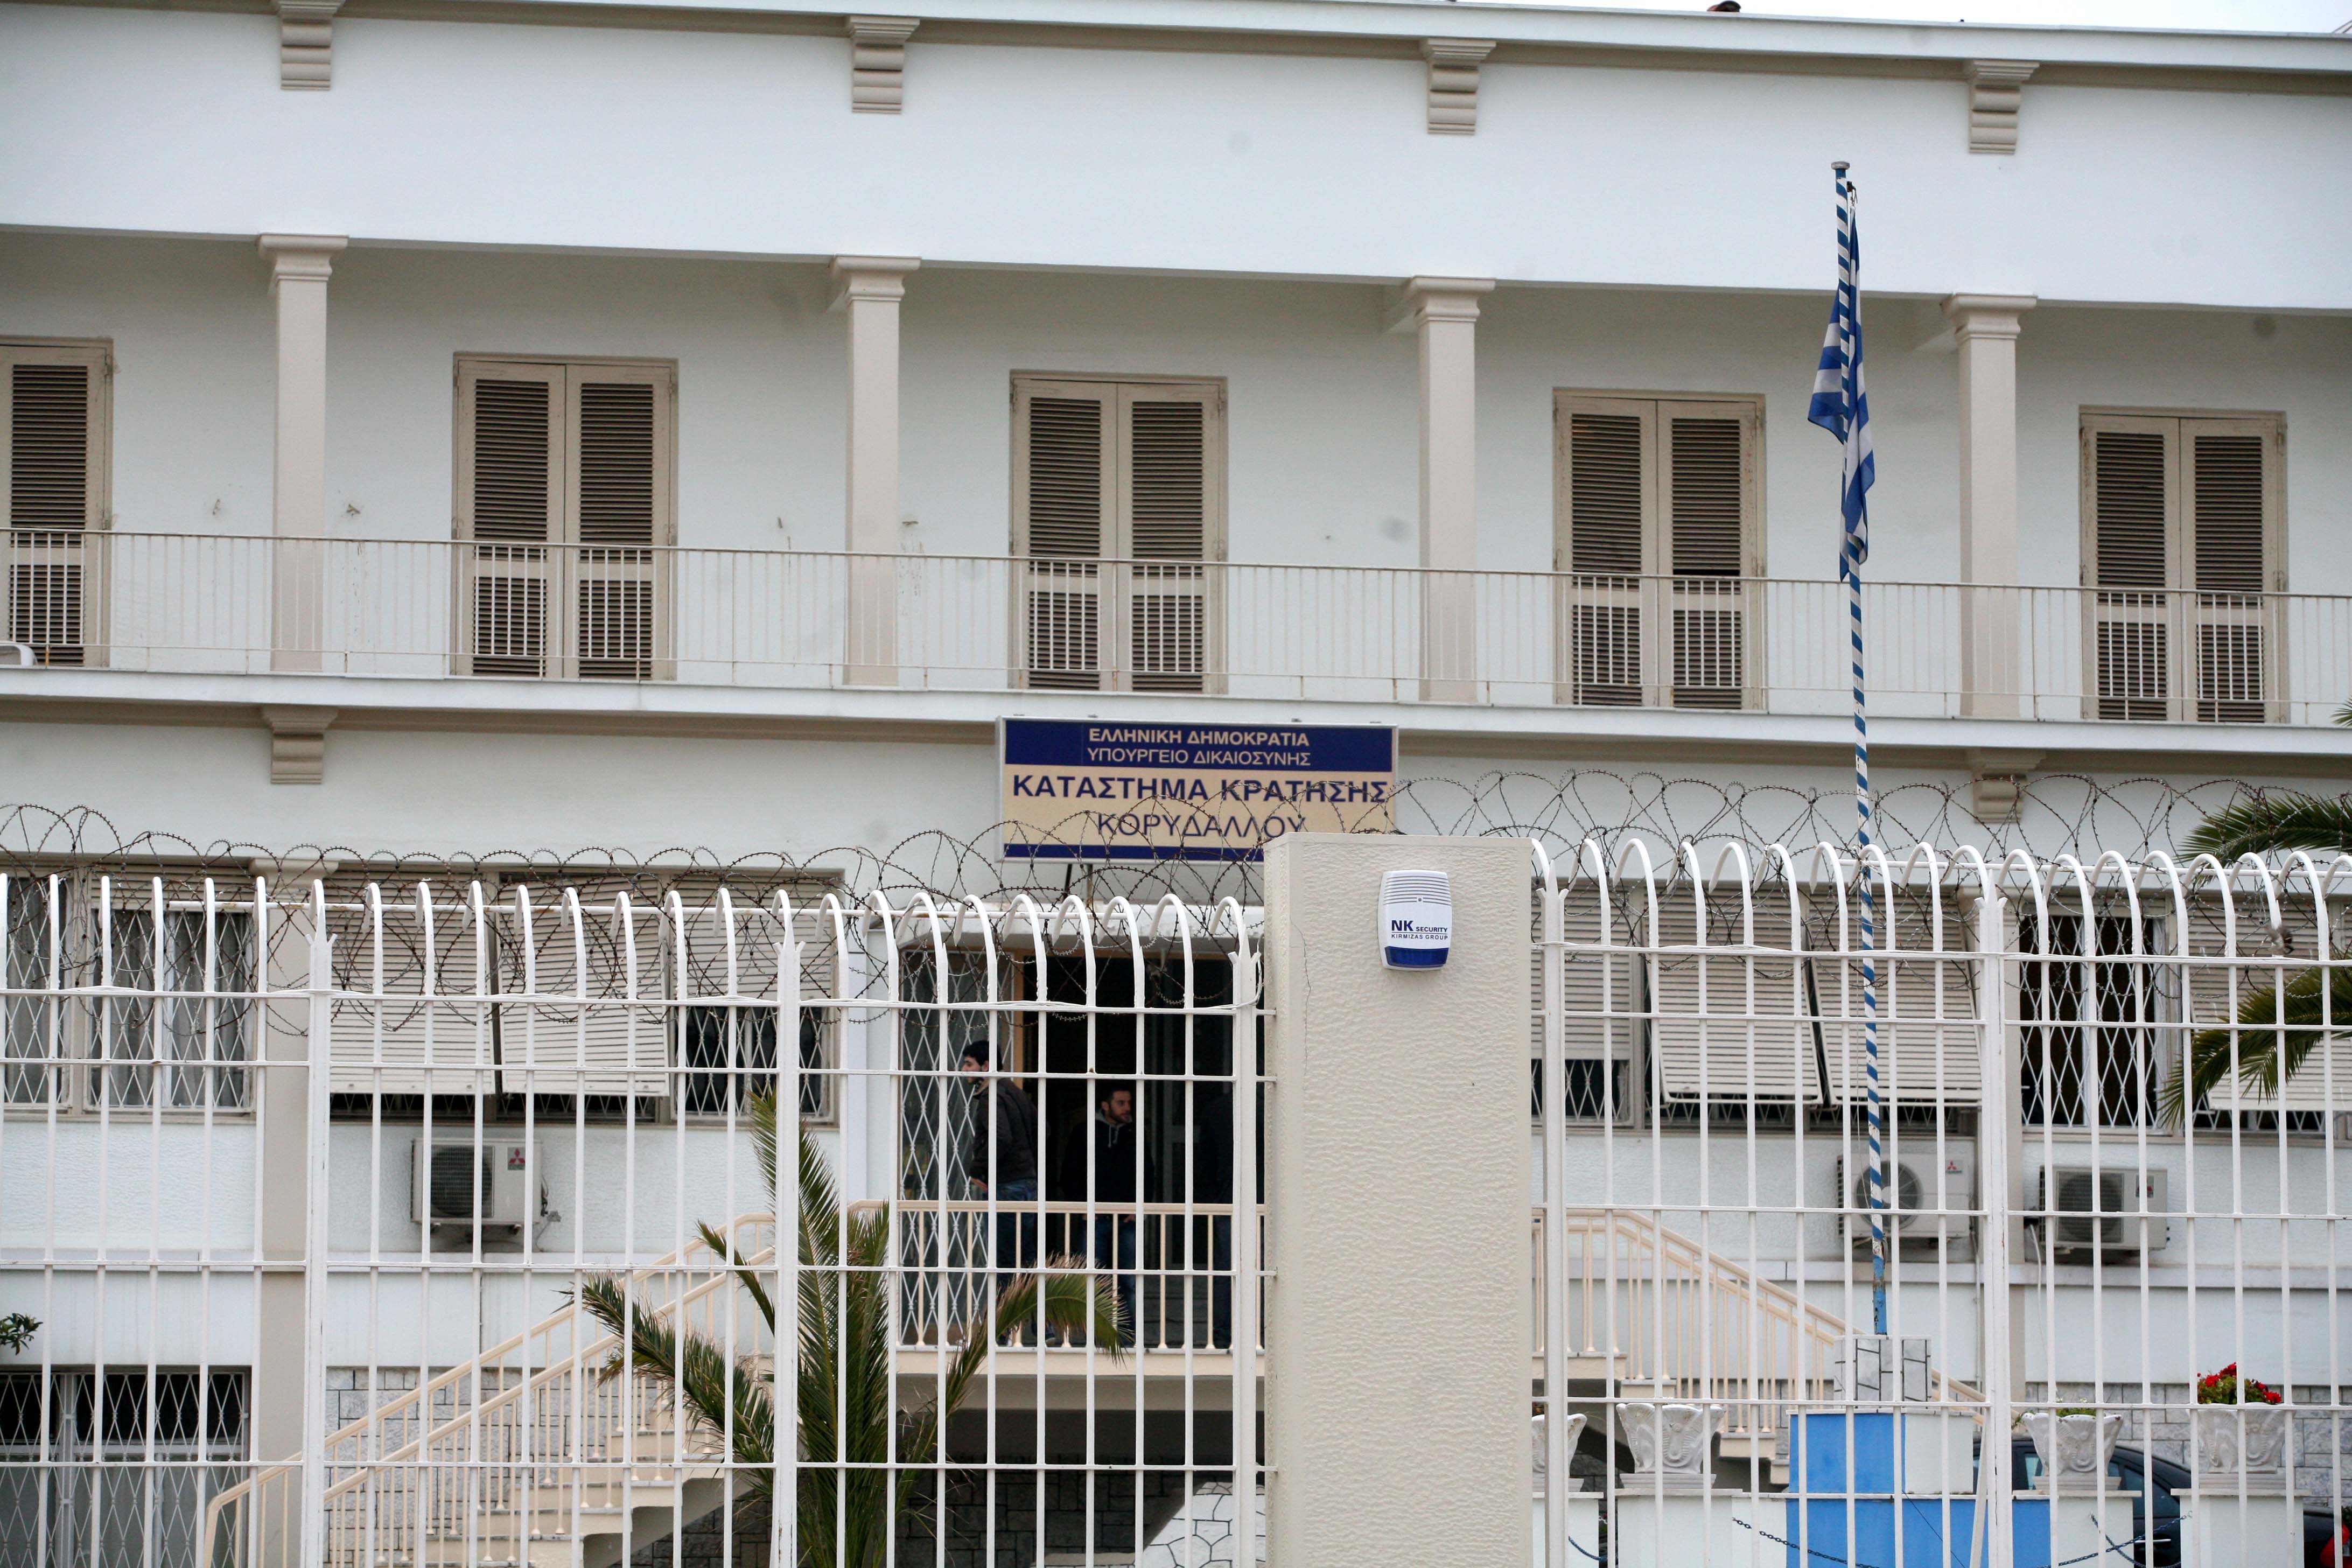 Σε απεργία πείνας έγκλειστος των φυλακών Κορυδαλλού που δεν τον αφήνουν να σπουδάσει